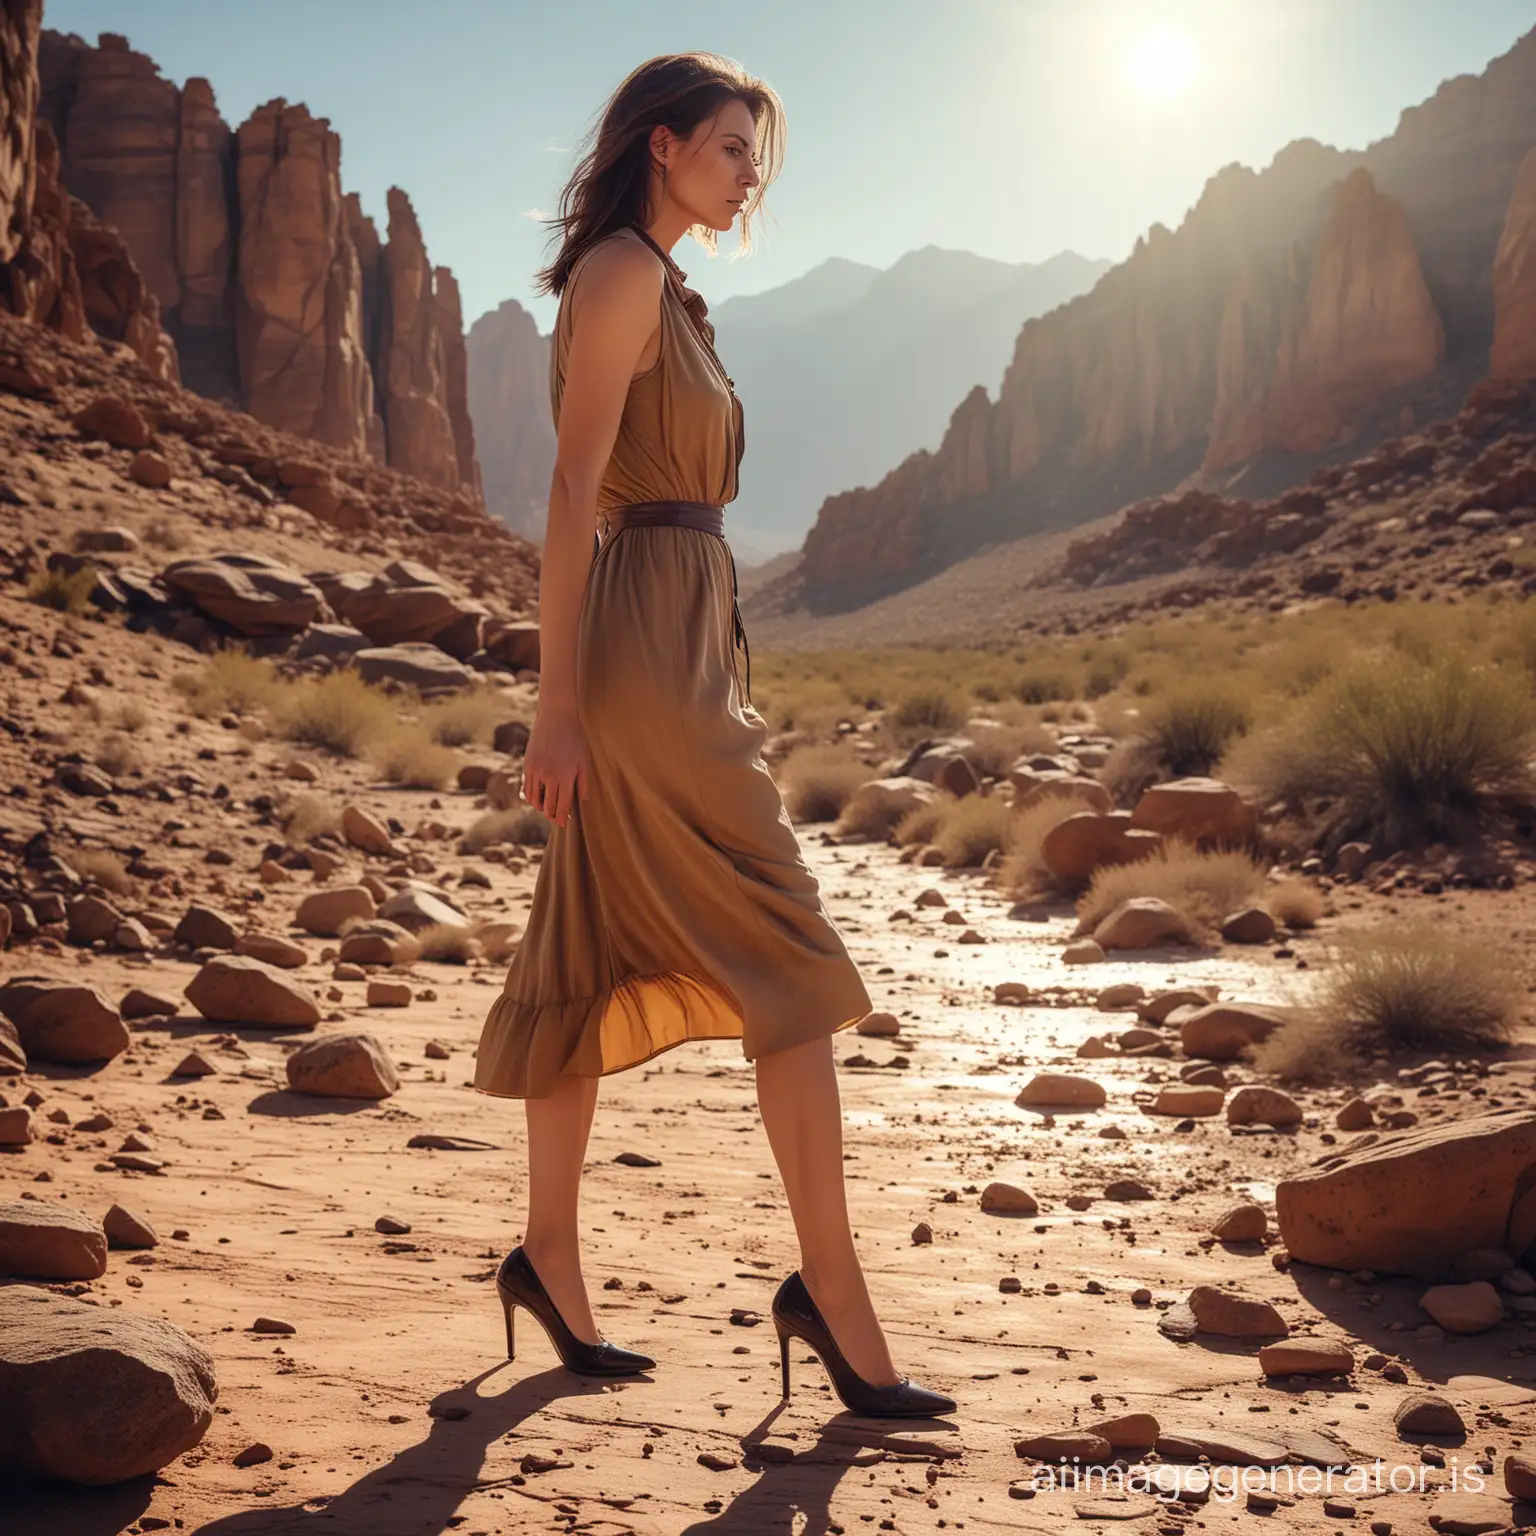 Thirsty-Woman-in-Vintage-Attire-Struggling-Through-Rocky-Desert